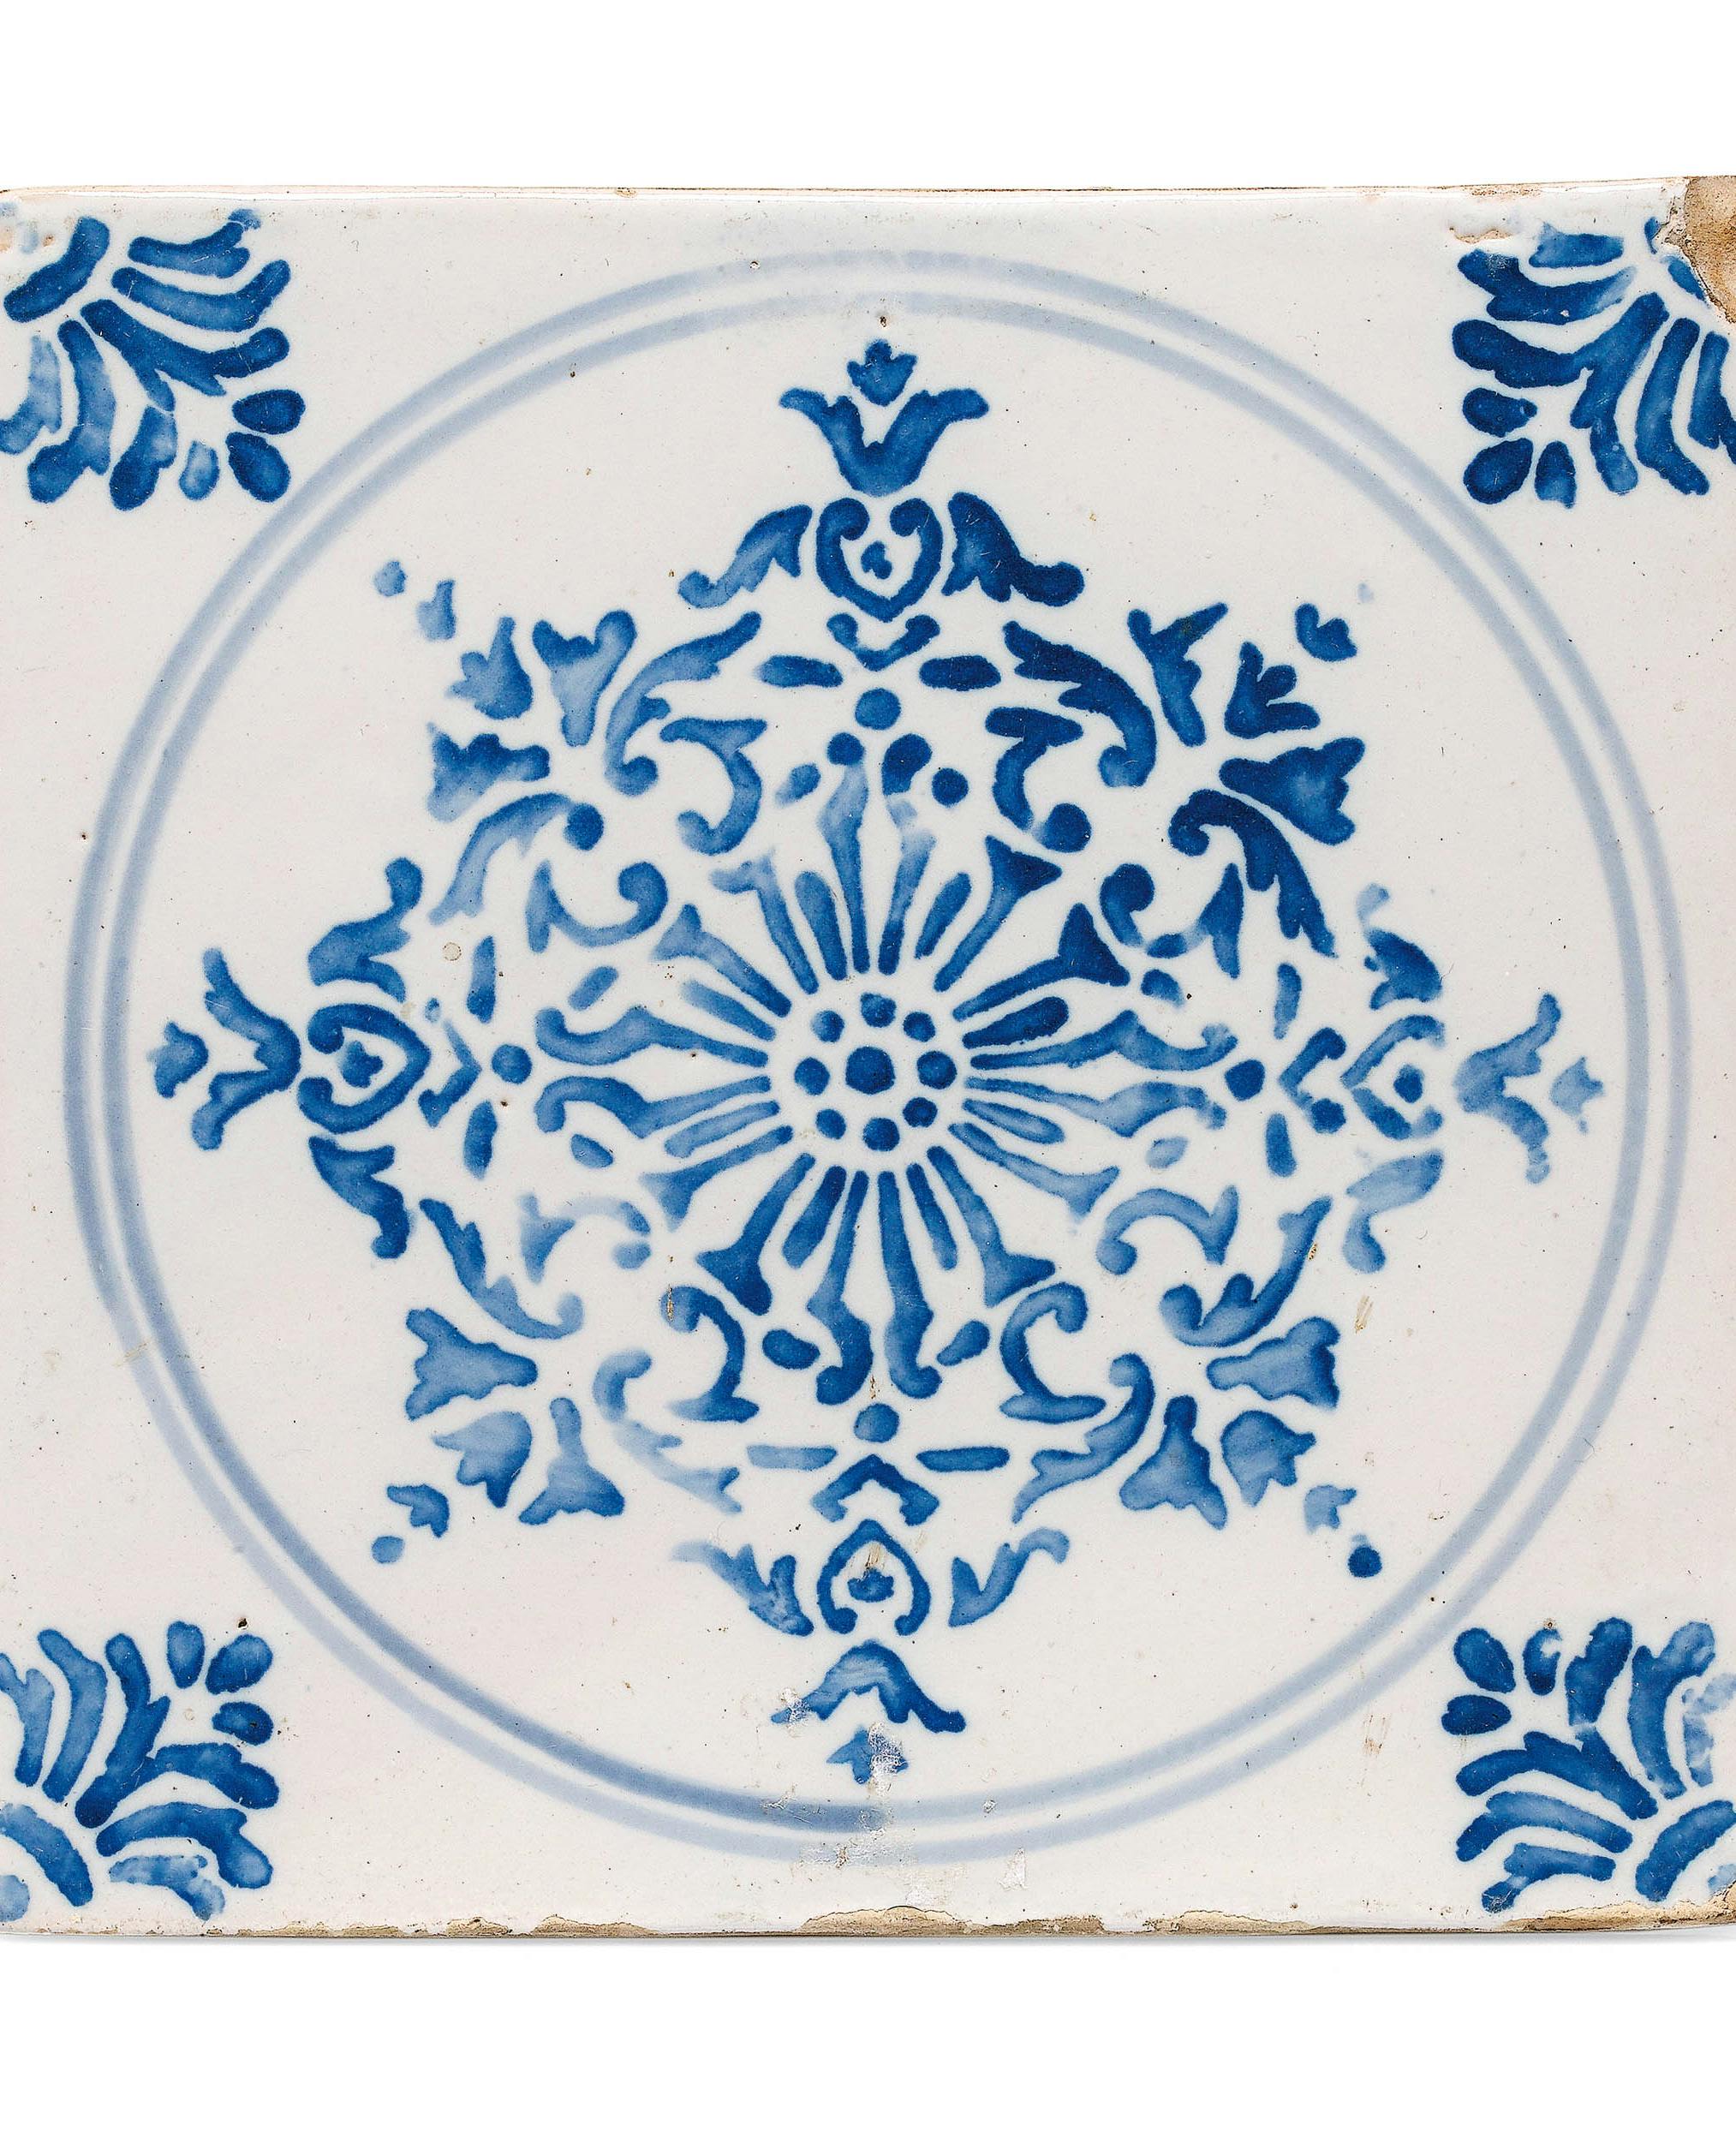 Mattonella quadrata bianca con decoro azzurro con motivi vegetali dentro un cerchio